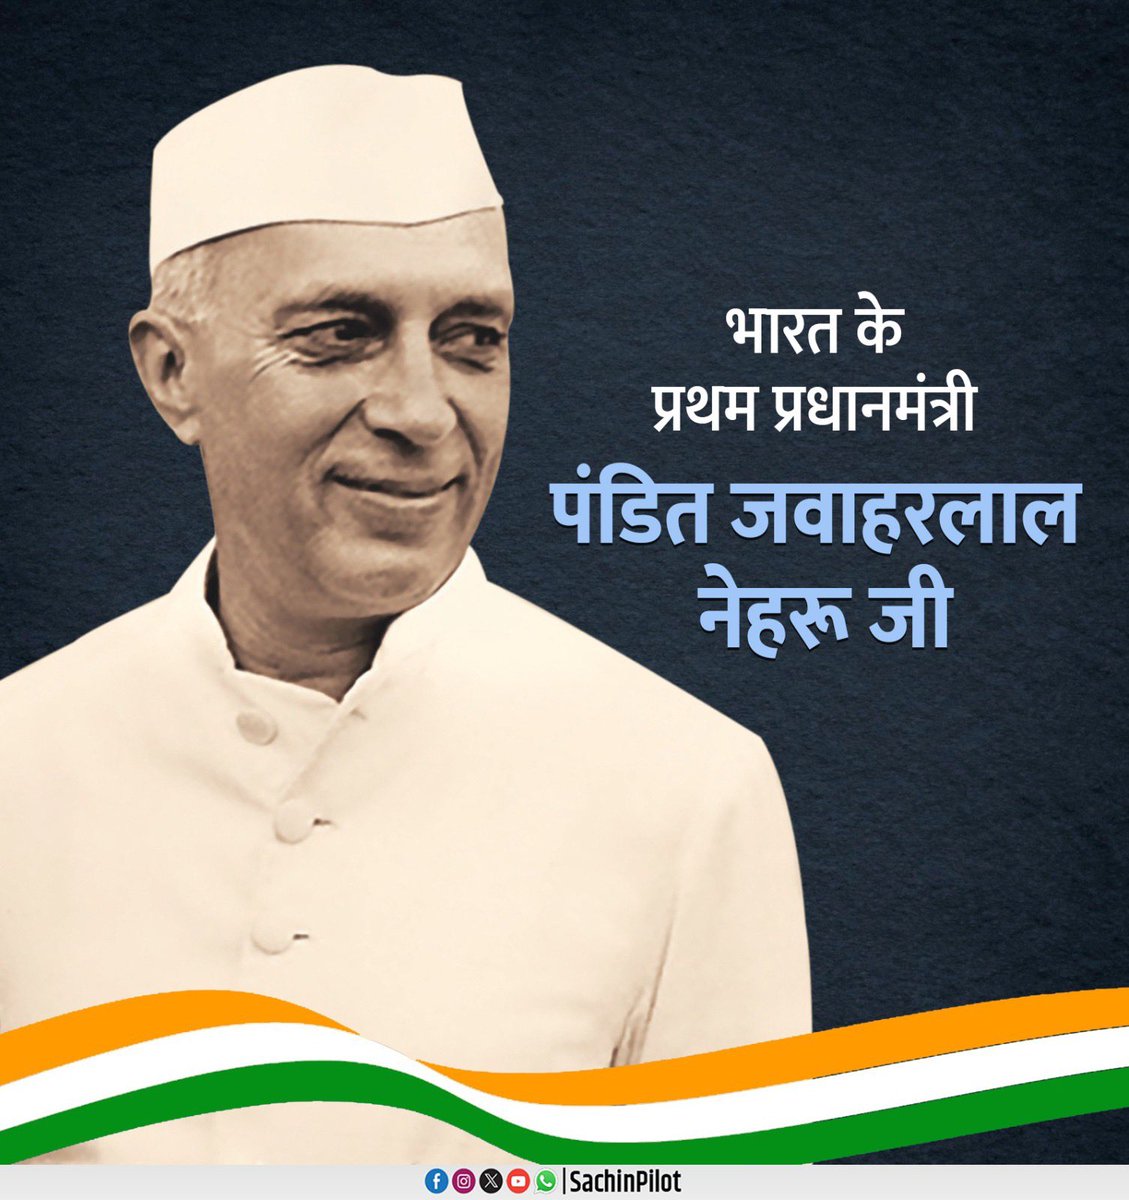 भारत के प्रथम प्रधानमंत्री स्व. पंडित जवाहरलाल नेहरू जी की पुण्यतिथि पर मैं उन्हें श्रद्धापूर्वक नमन करता हूं। आजादी के बाद नेहरू जी ने अपनी दूरदर्शिता से राष्ट्र के निर्माण एवं लोकतांत्रिक व्यवस्थाओं को मजबूती प्रदान करने के लिए कई महत्वपूर्ण एवं ऐतिहासिक निर्णय लिए। हम